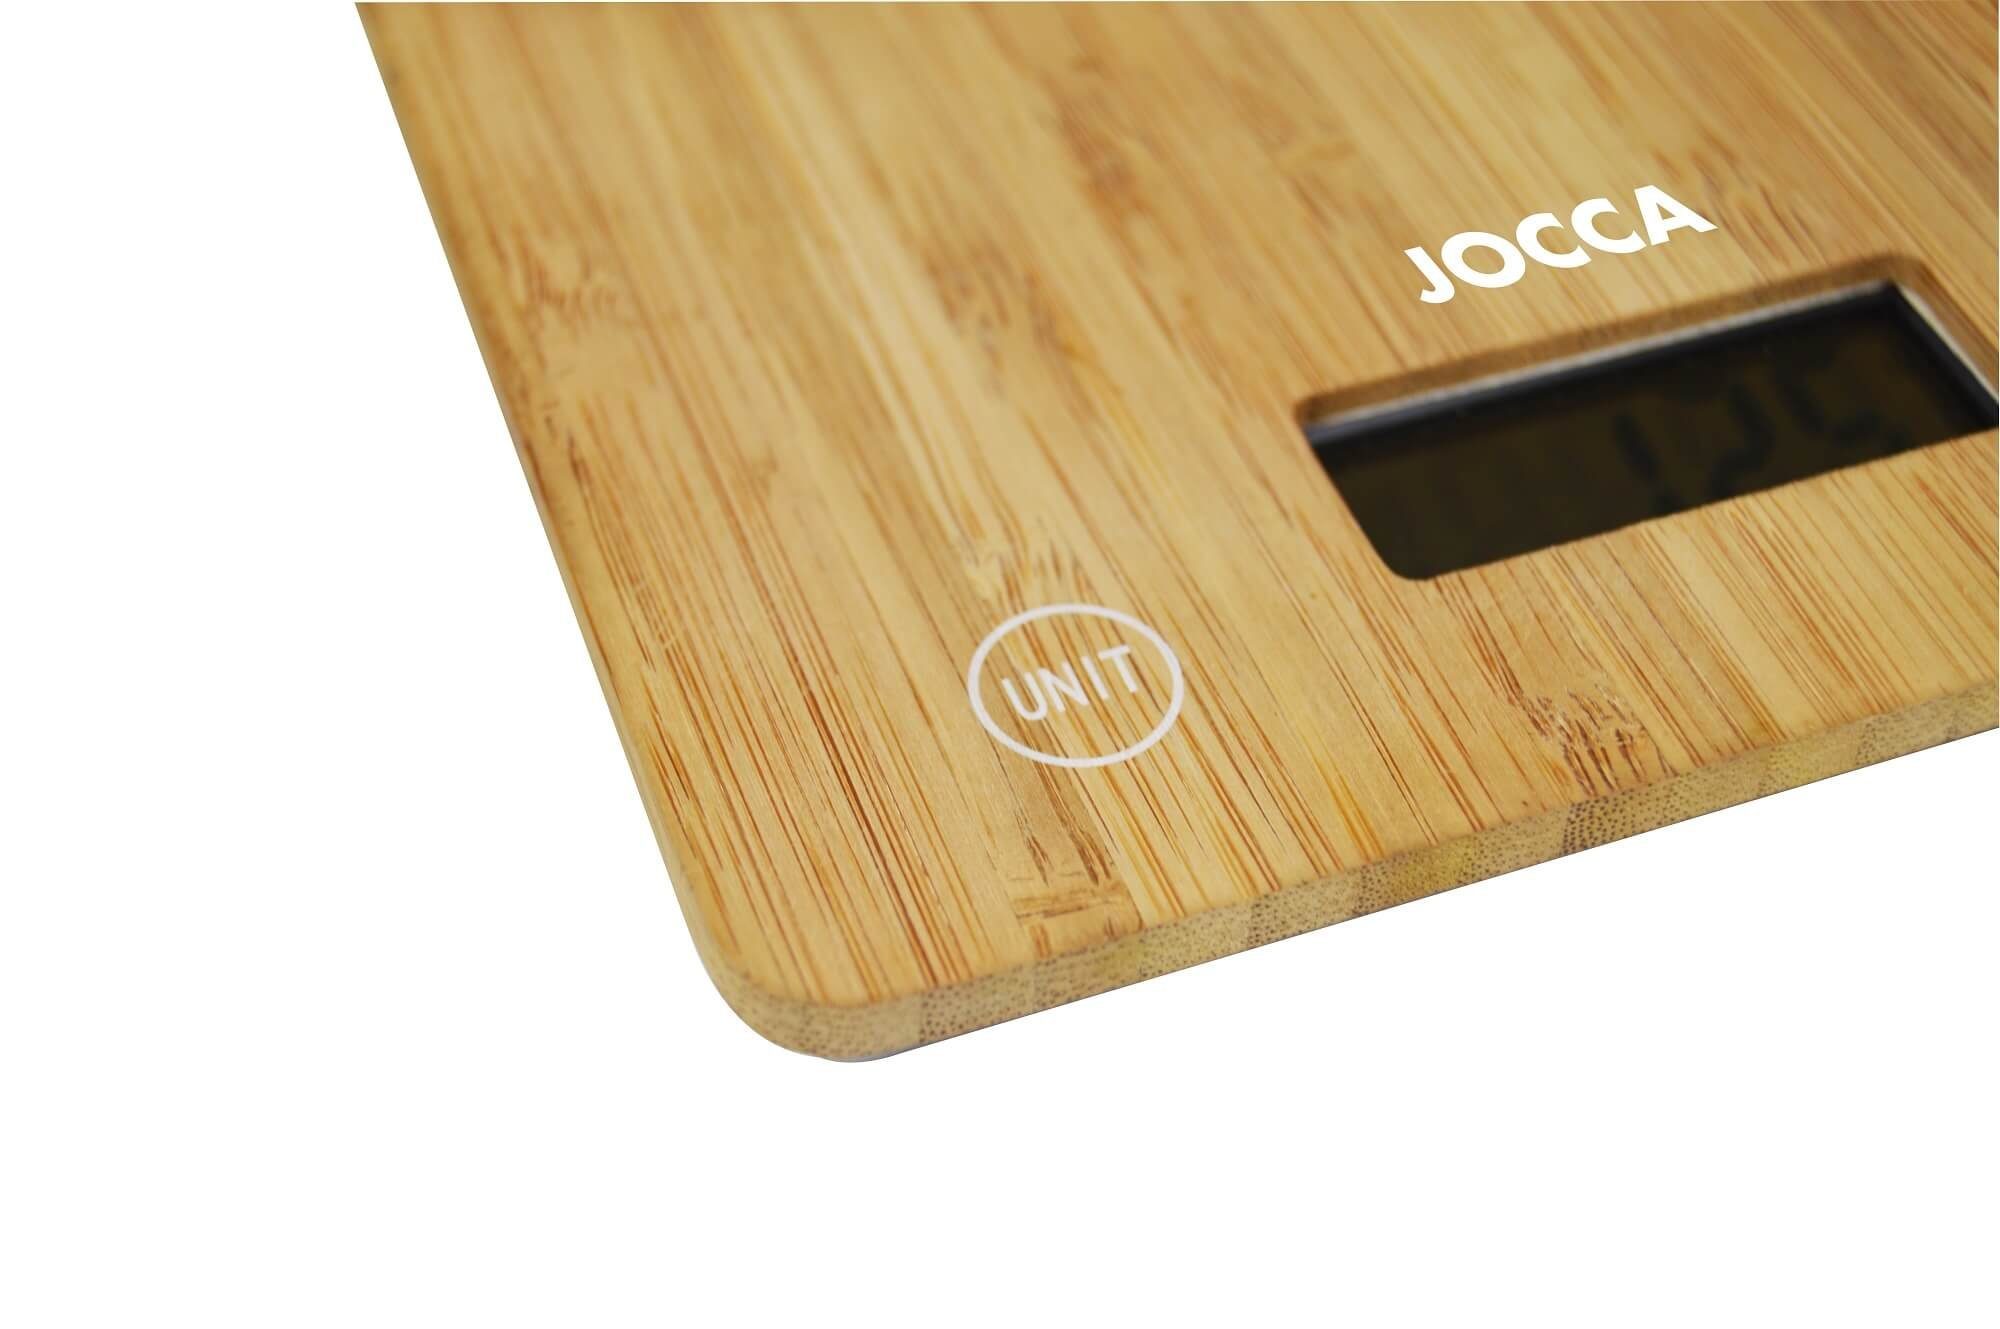 Bambus, Jocca LCD 5 elektronische Küchenwaage aus Display, kg, bis Küchenwaage Tara-Funktion